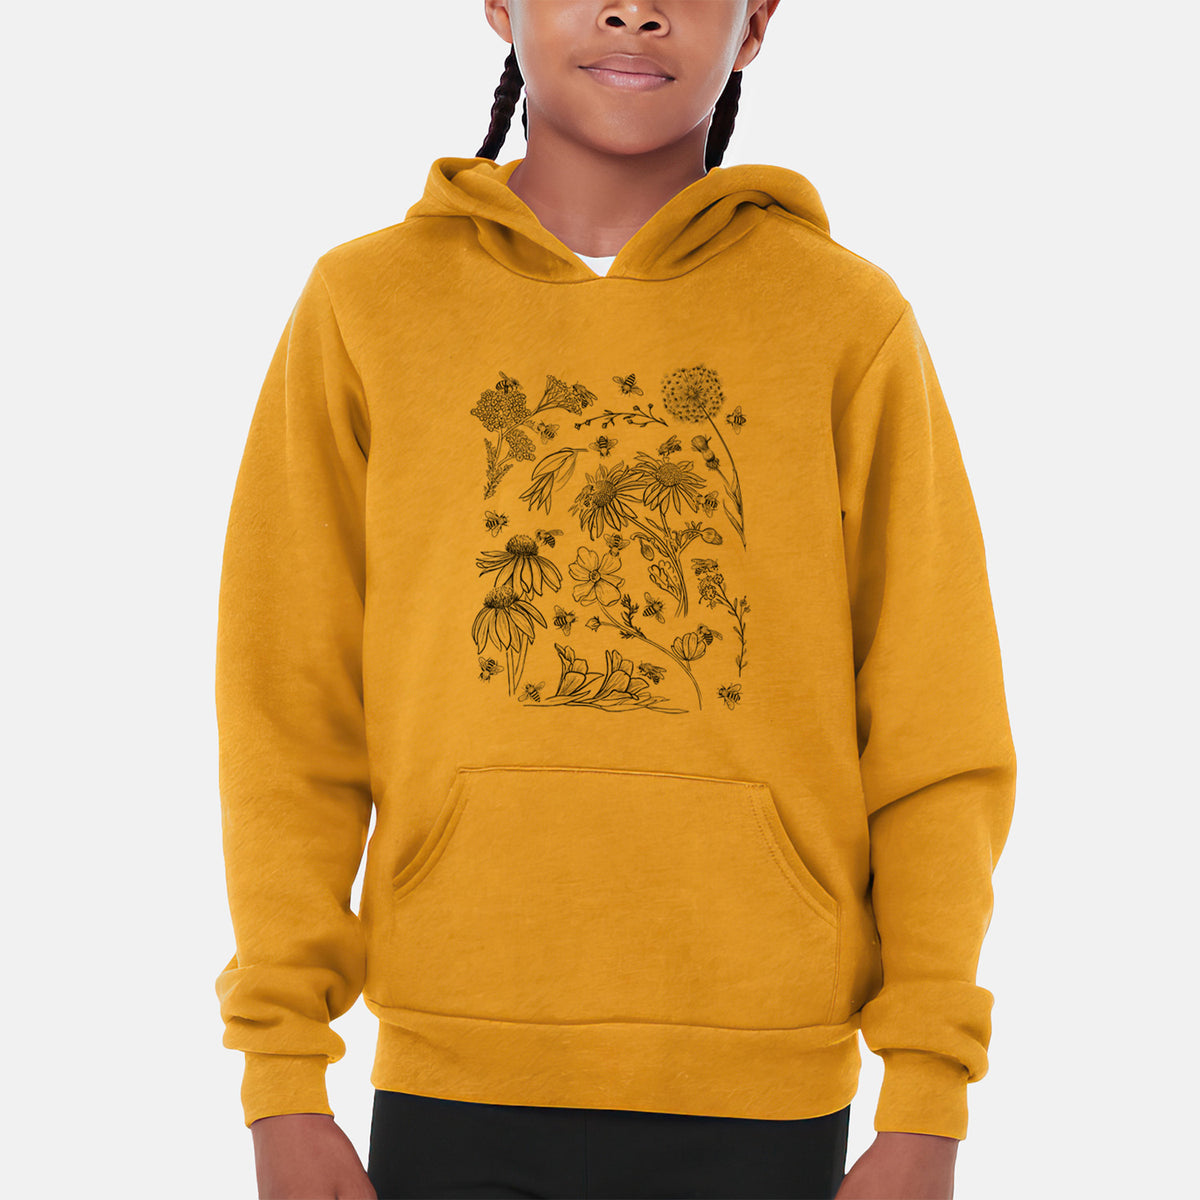 Bees &amp; Blooms - Honeybees with Wildflowers - Youth Hoodie Sweatshirt